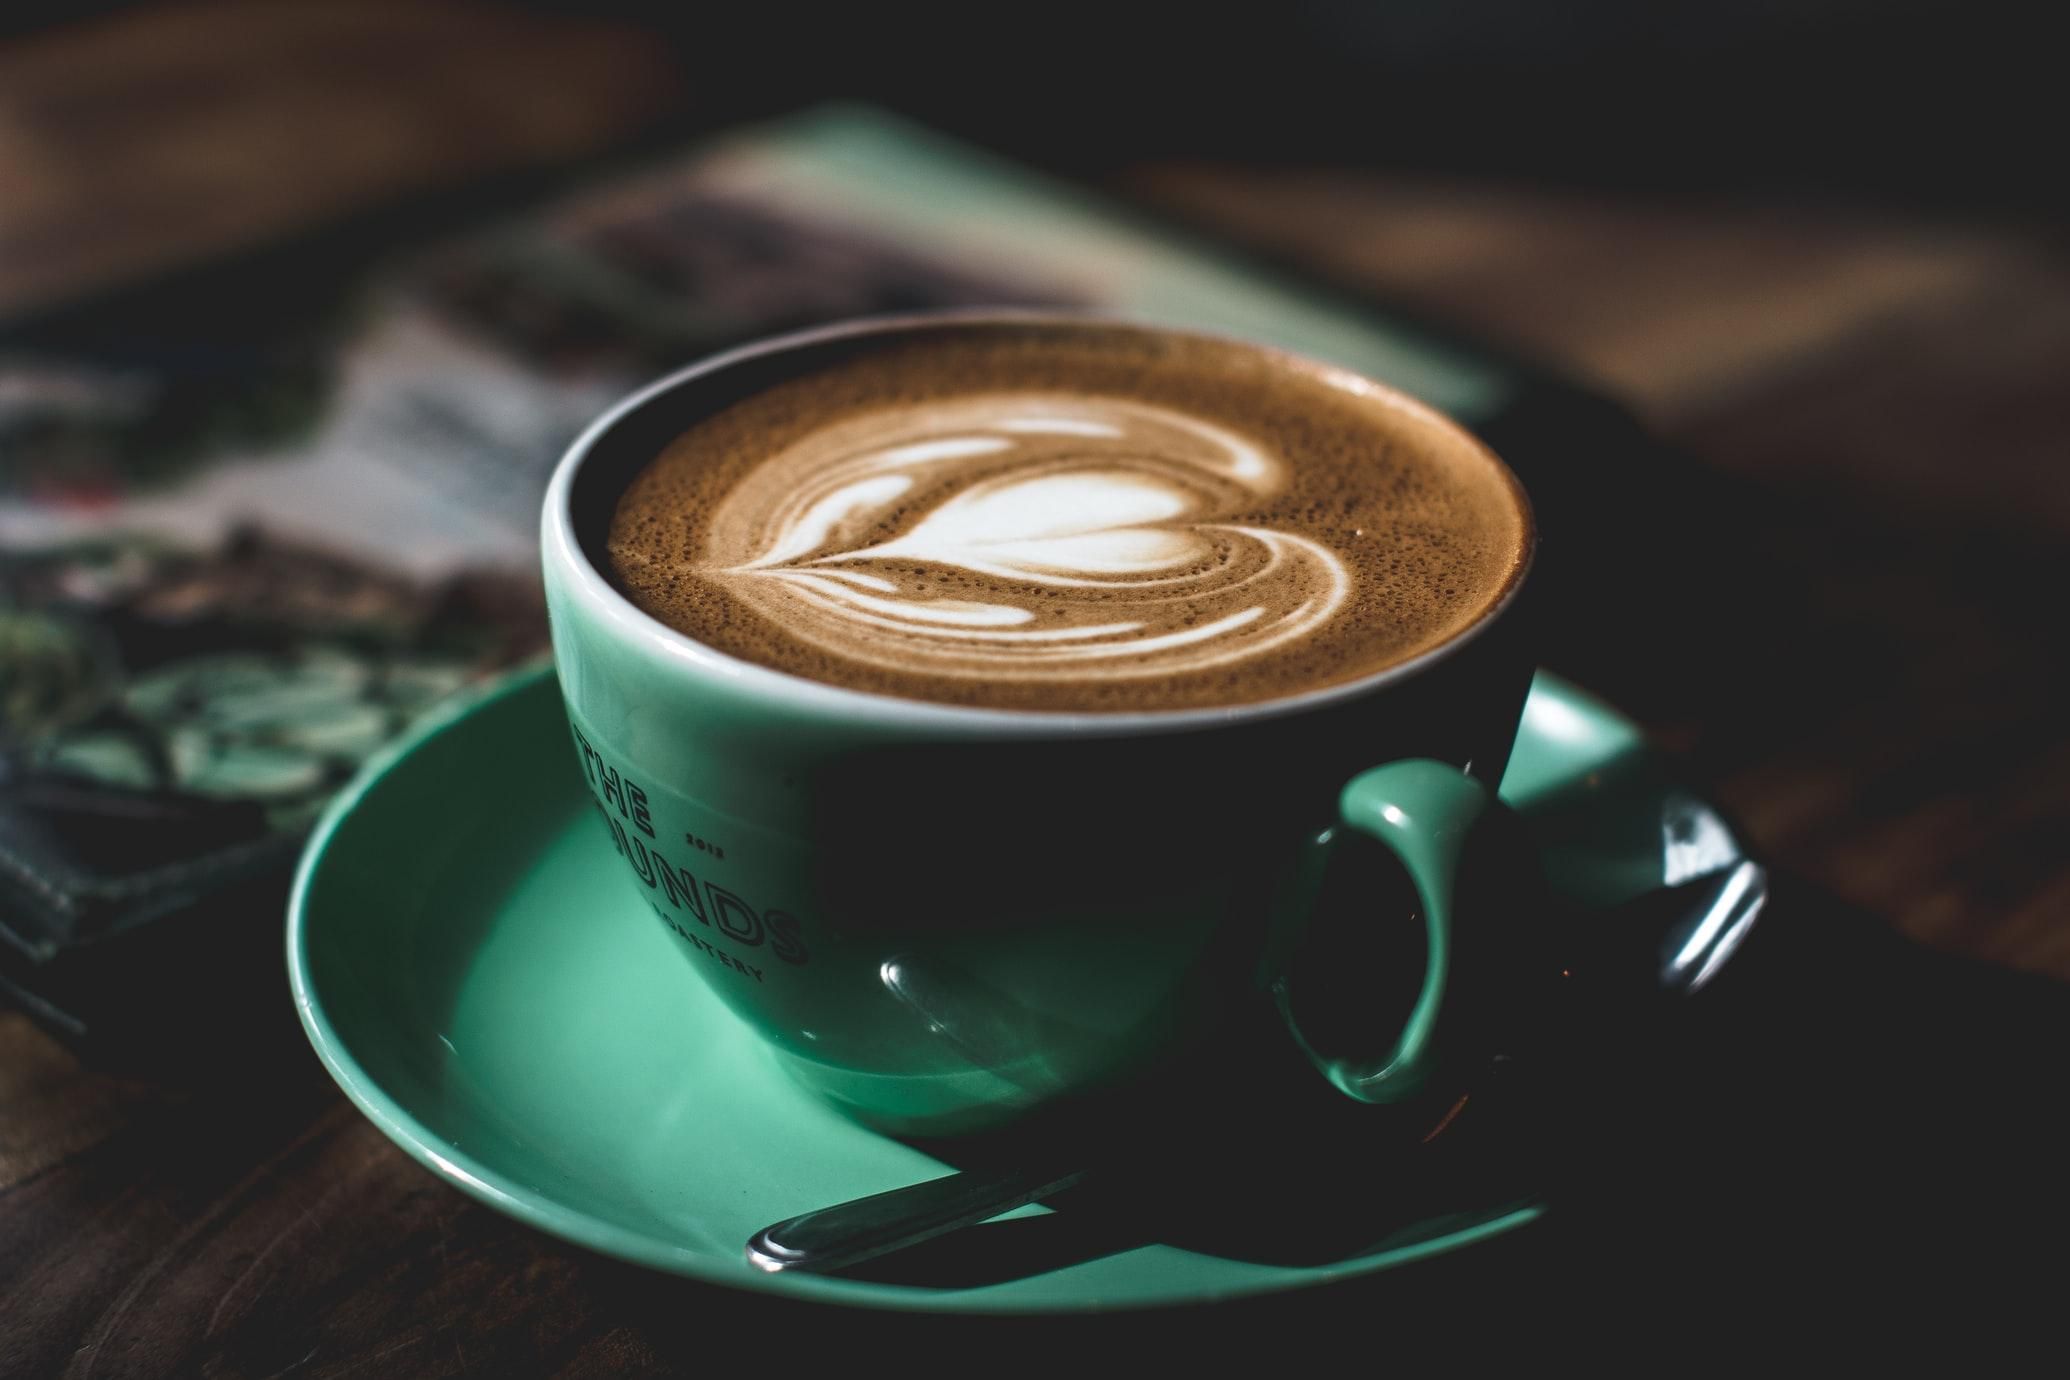 Как кофе влияет на организм и что будет, если пить более 4 чашек в день: объяснение невролога